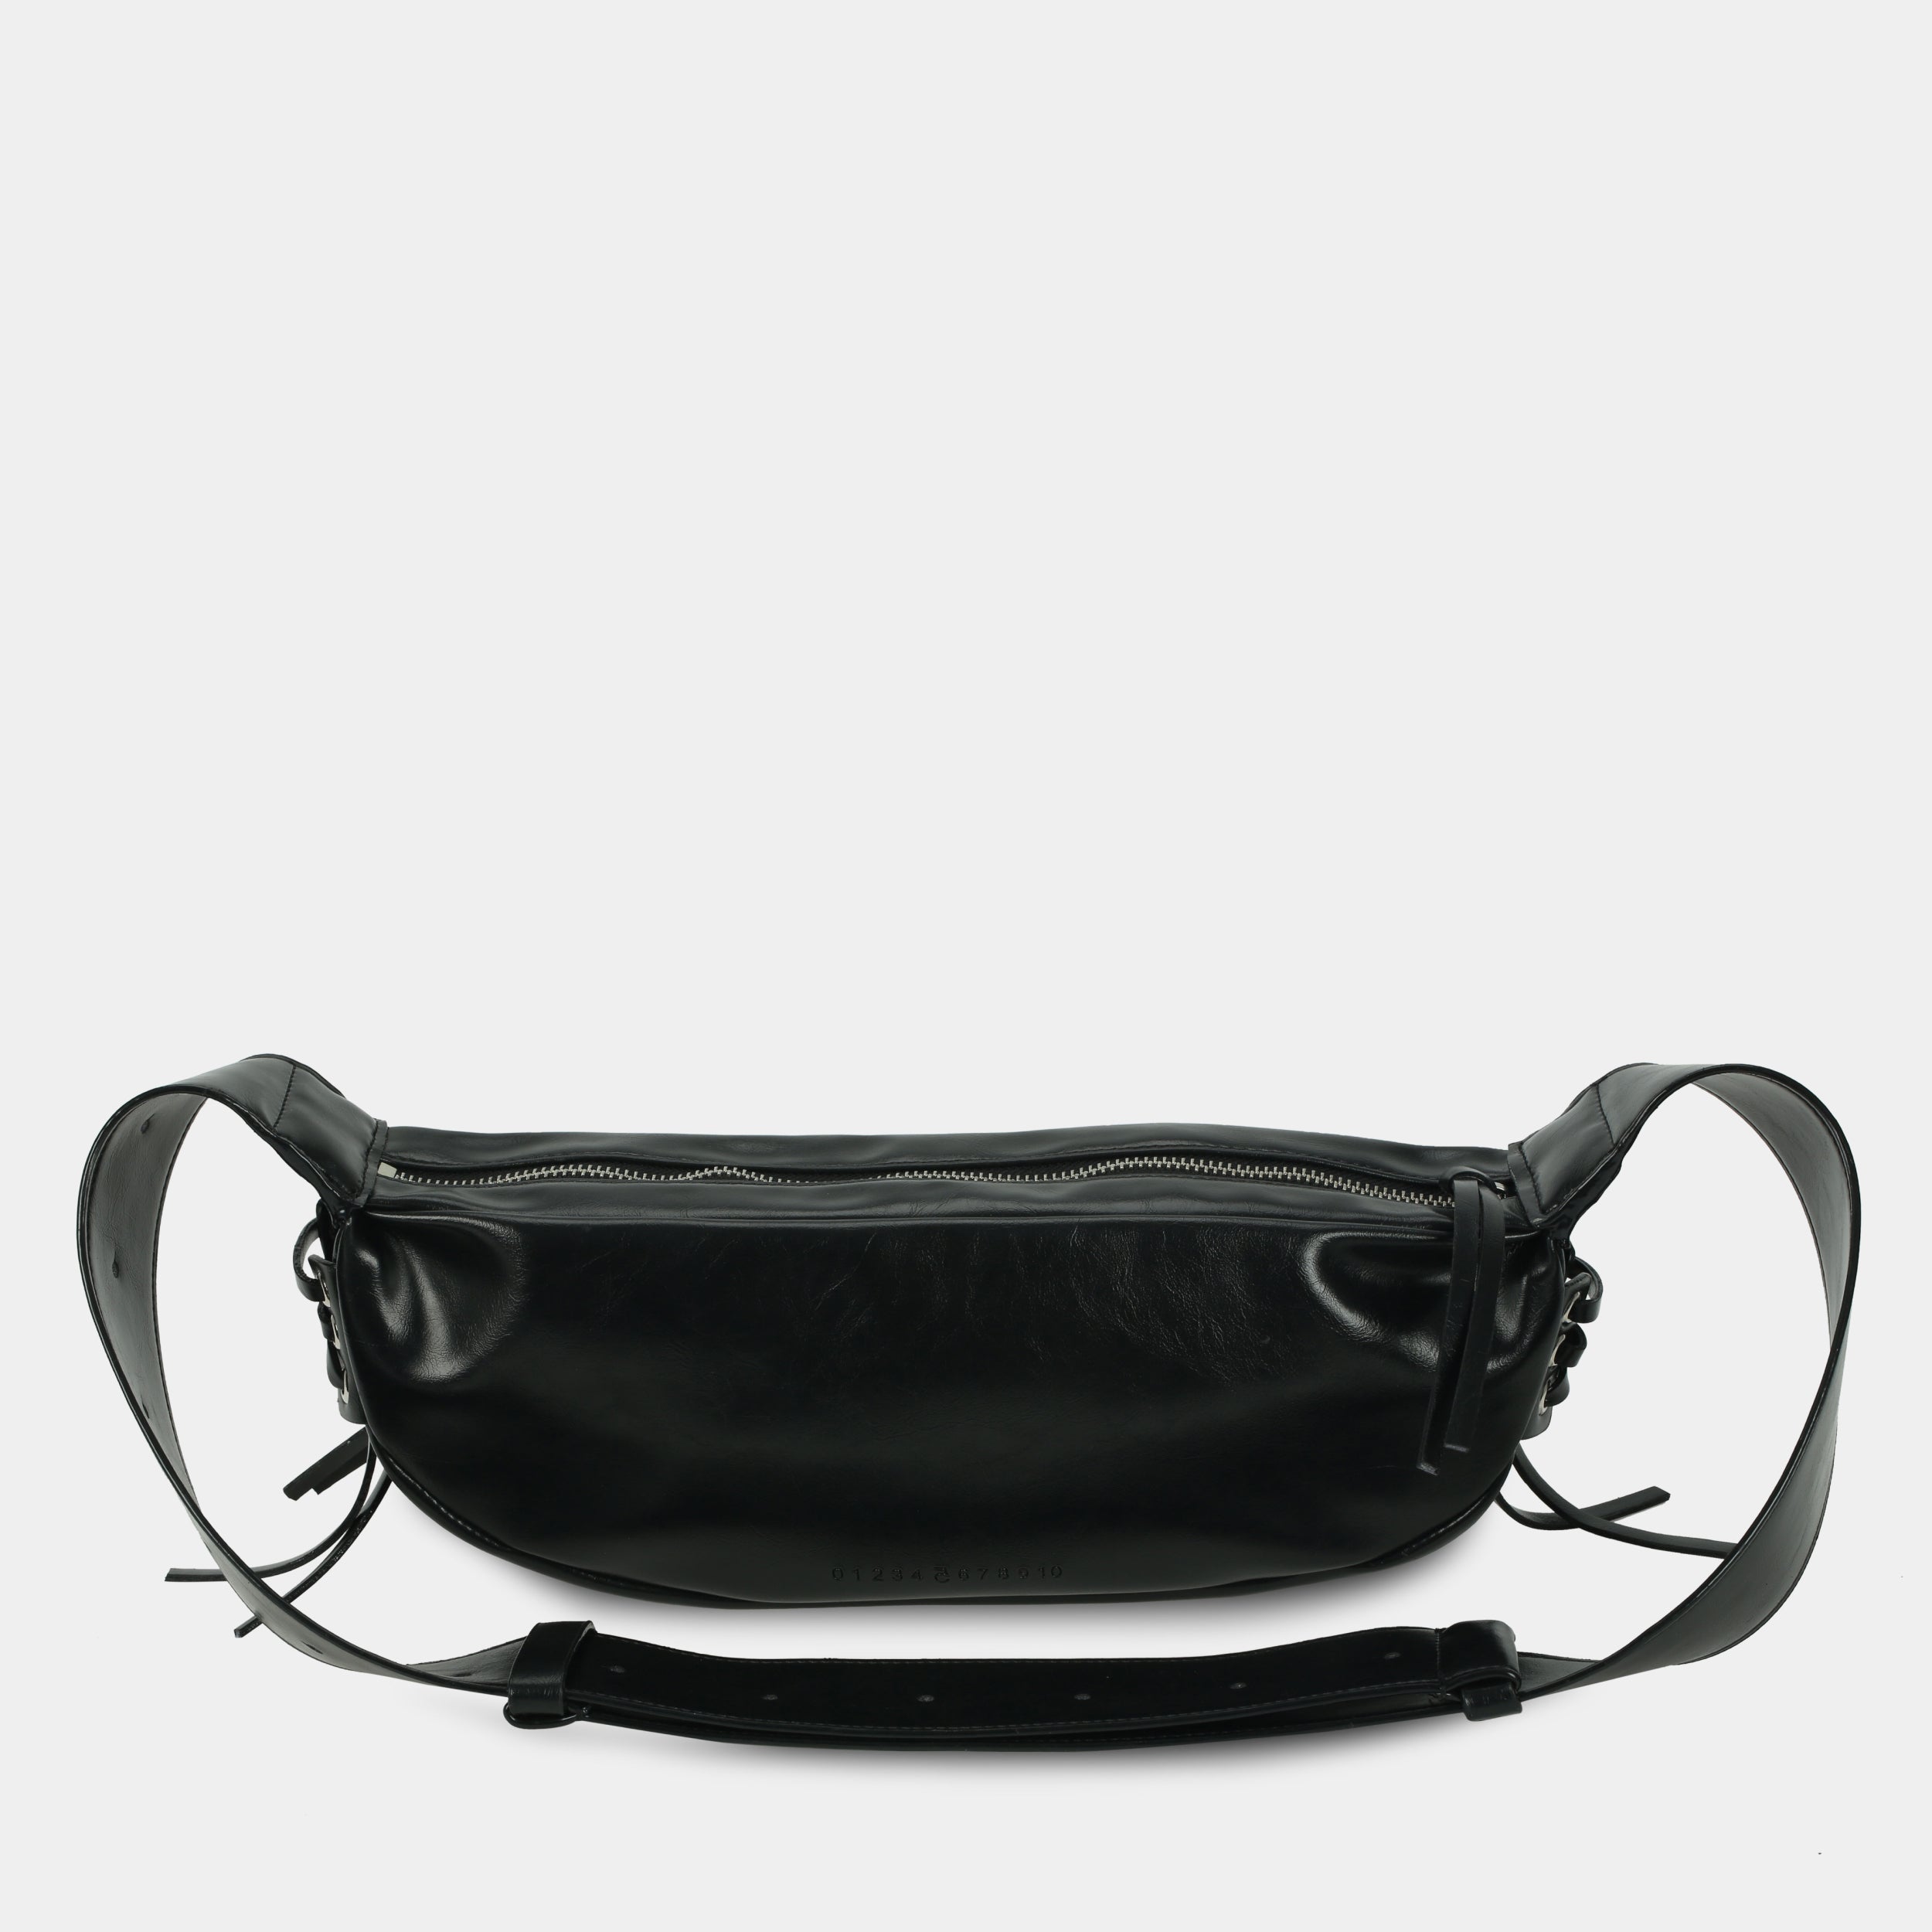 LACE bag large size (M) black